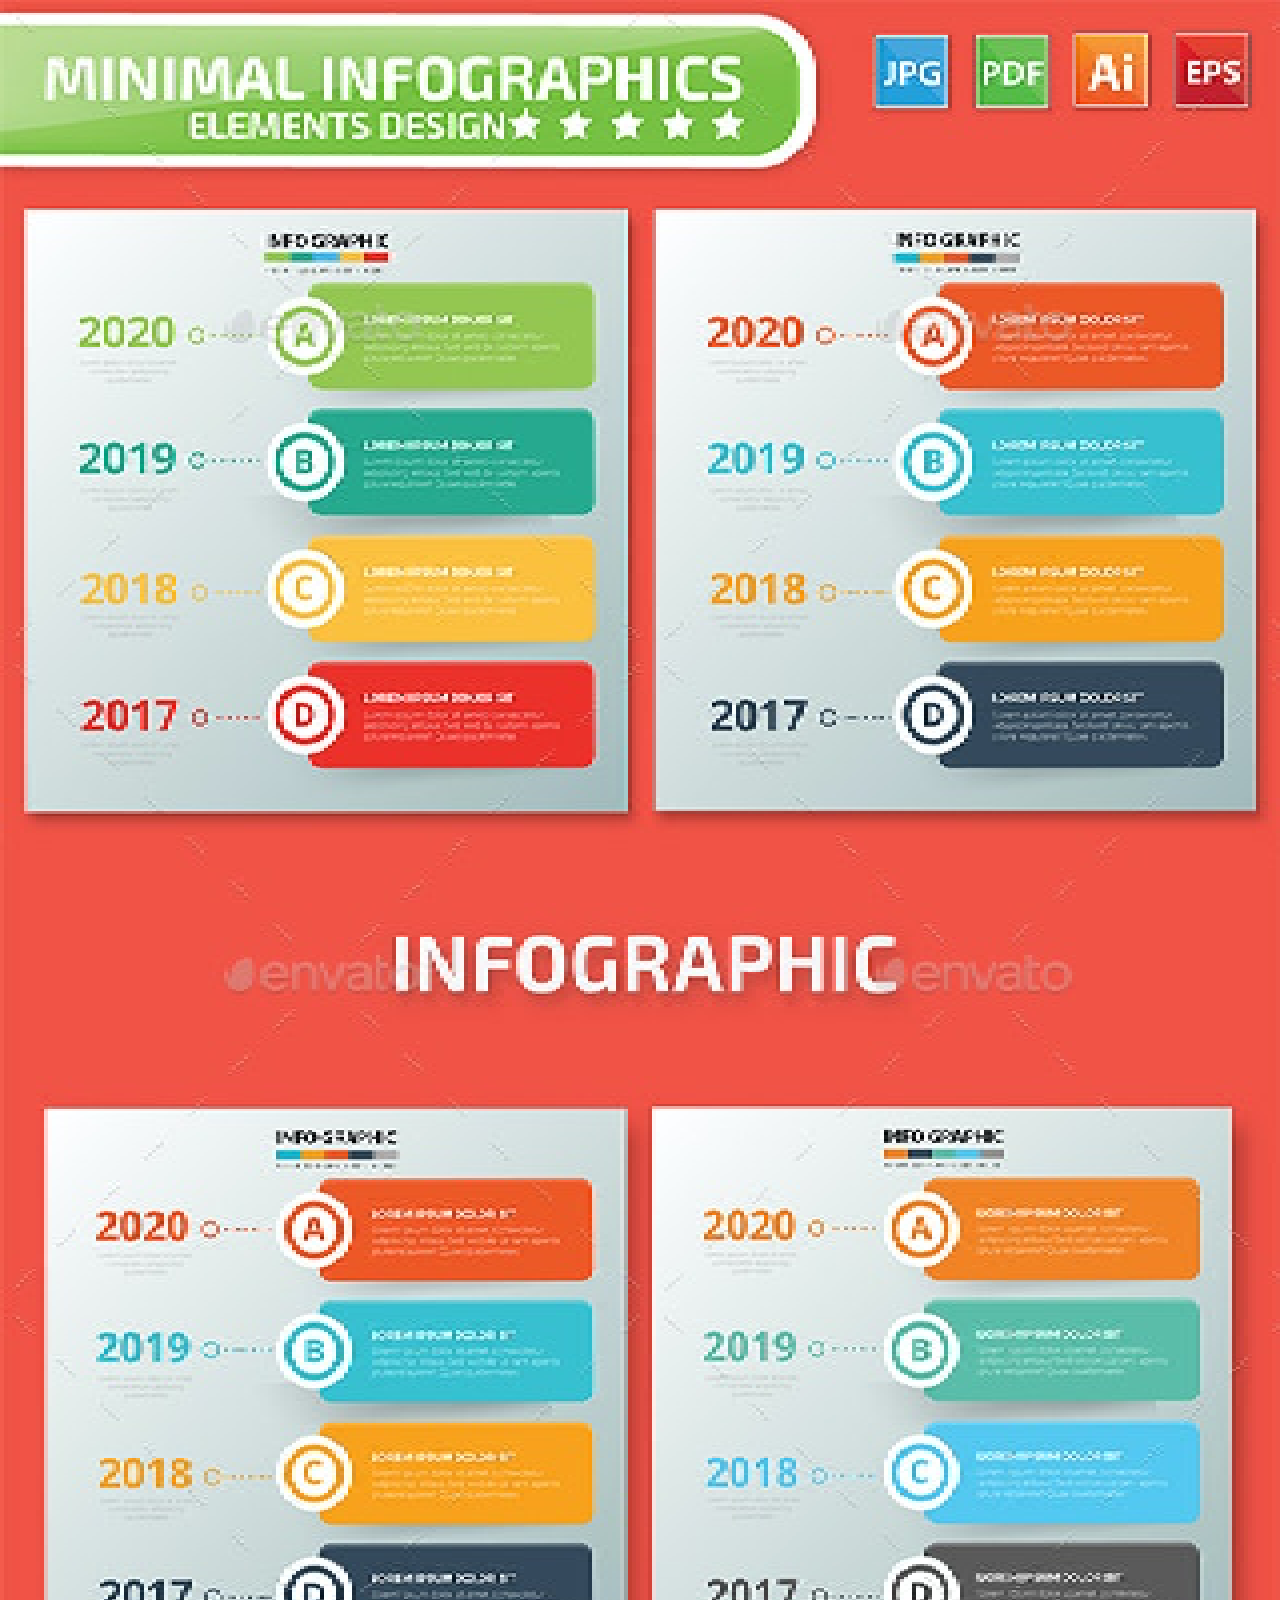 Timeline infographic design pinterest image.